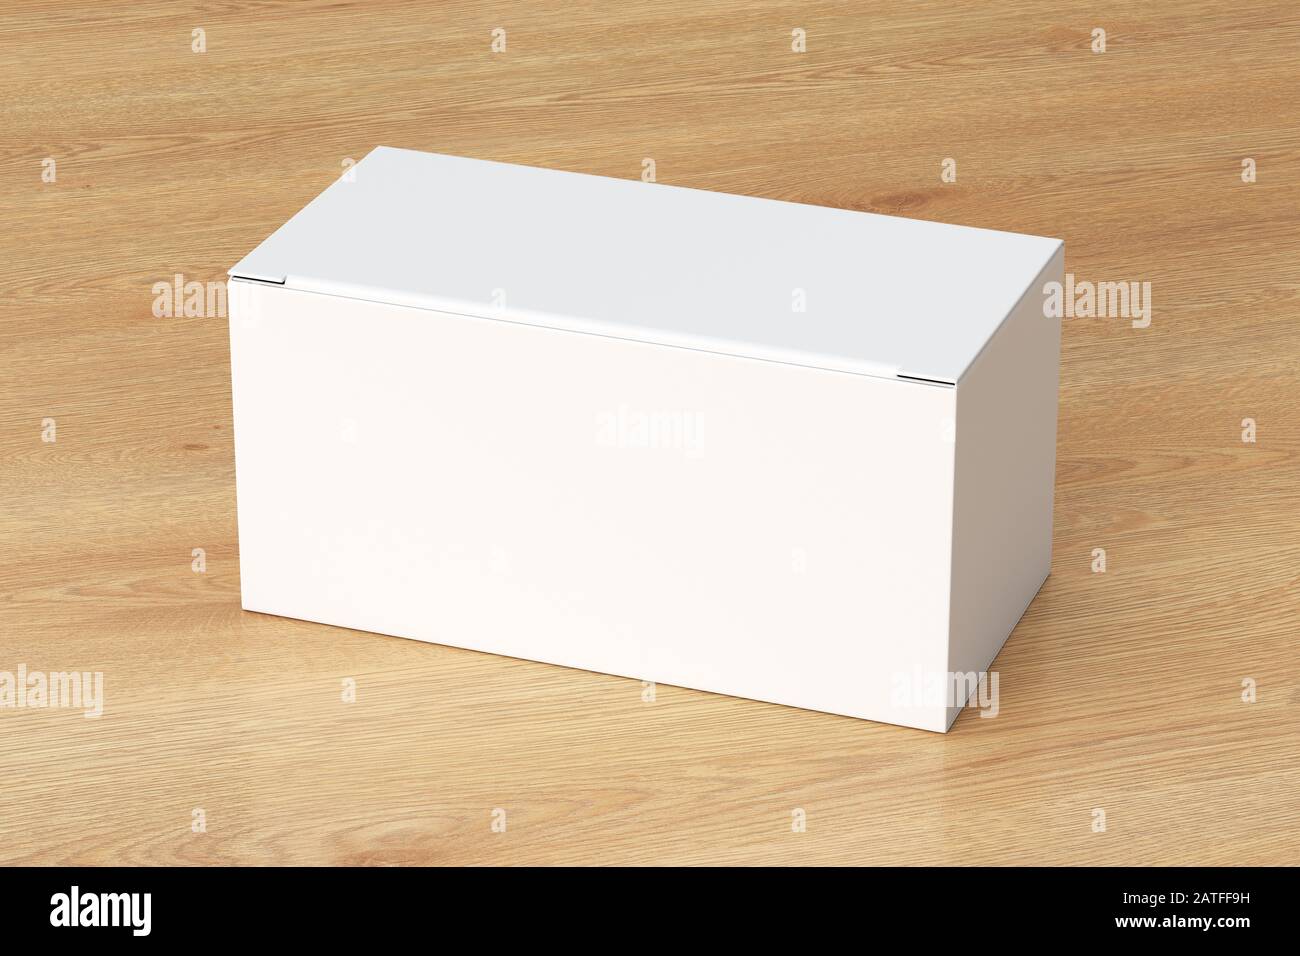 Boîte large blanche vierge avec couvercle rabattable fermé sur fond en bois. Chemin de détourage autour de la maquette de boîte Banque D'Images